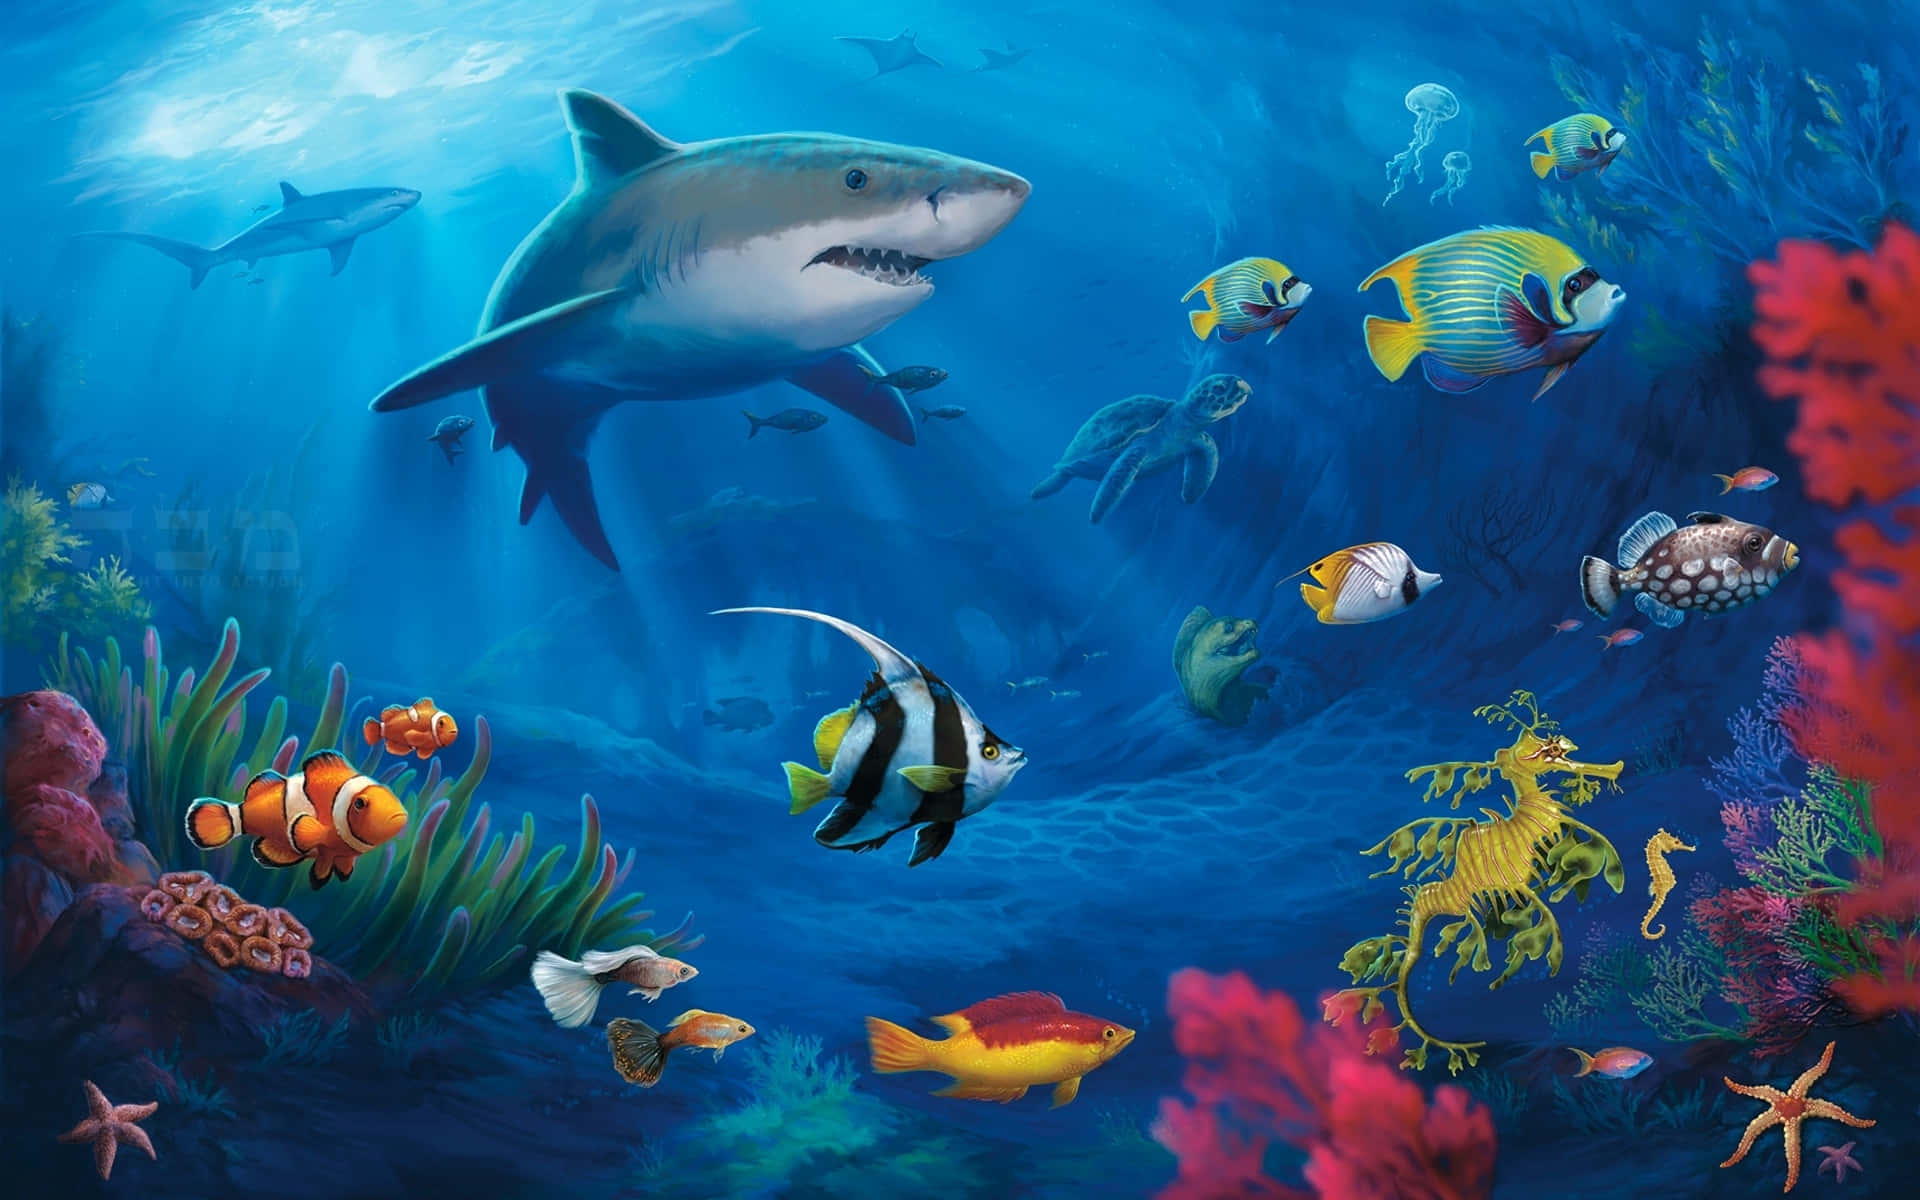 Annual Nemo Edition Wallpaper